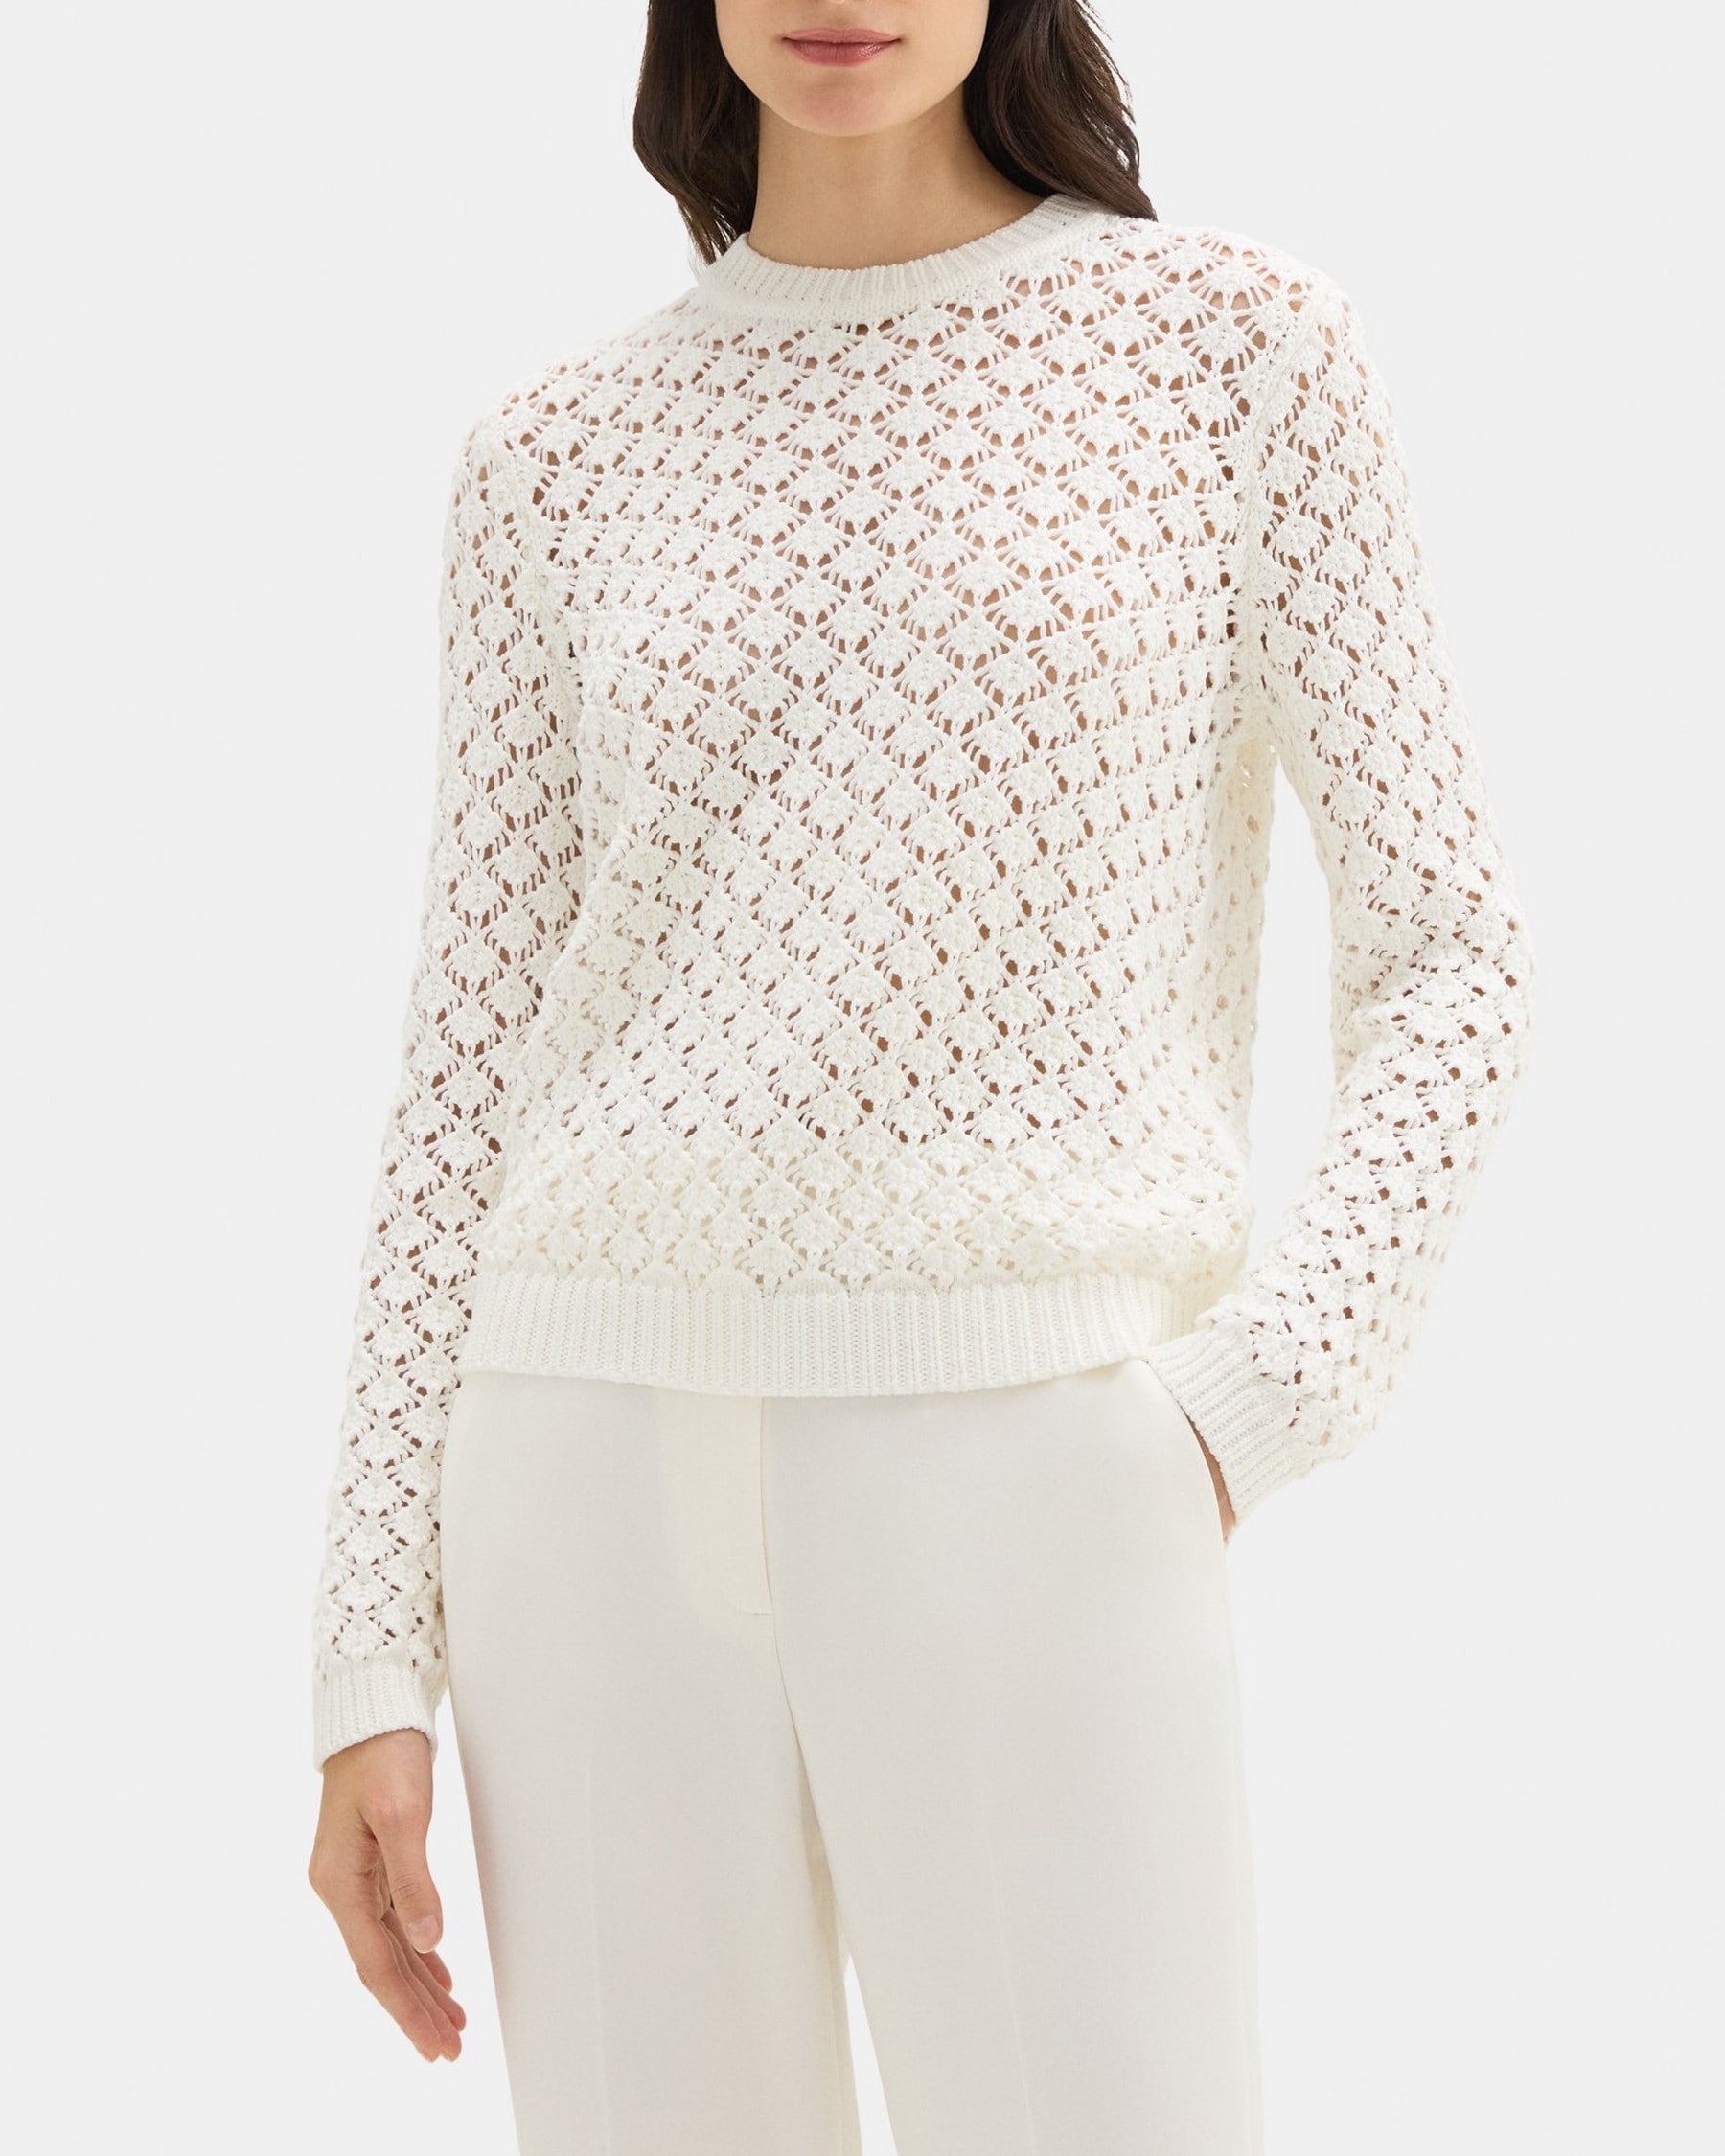 띠어리 Theory Open Stitched Sweater in Cotton-Blend,WHITE